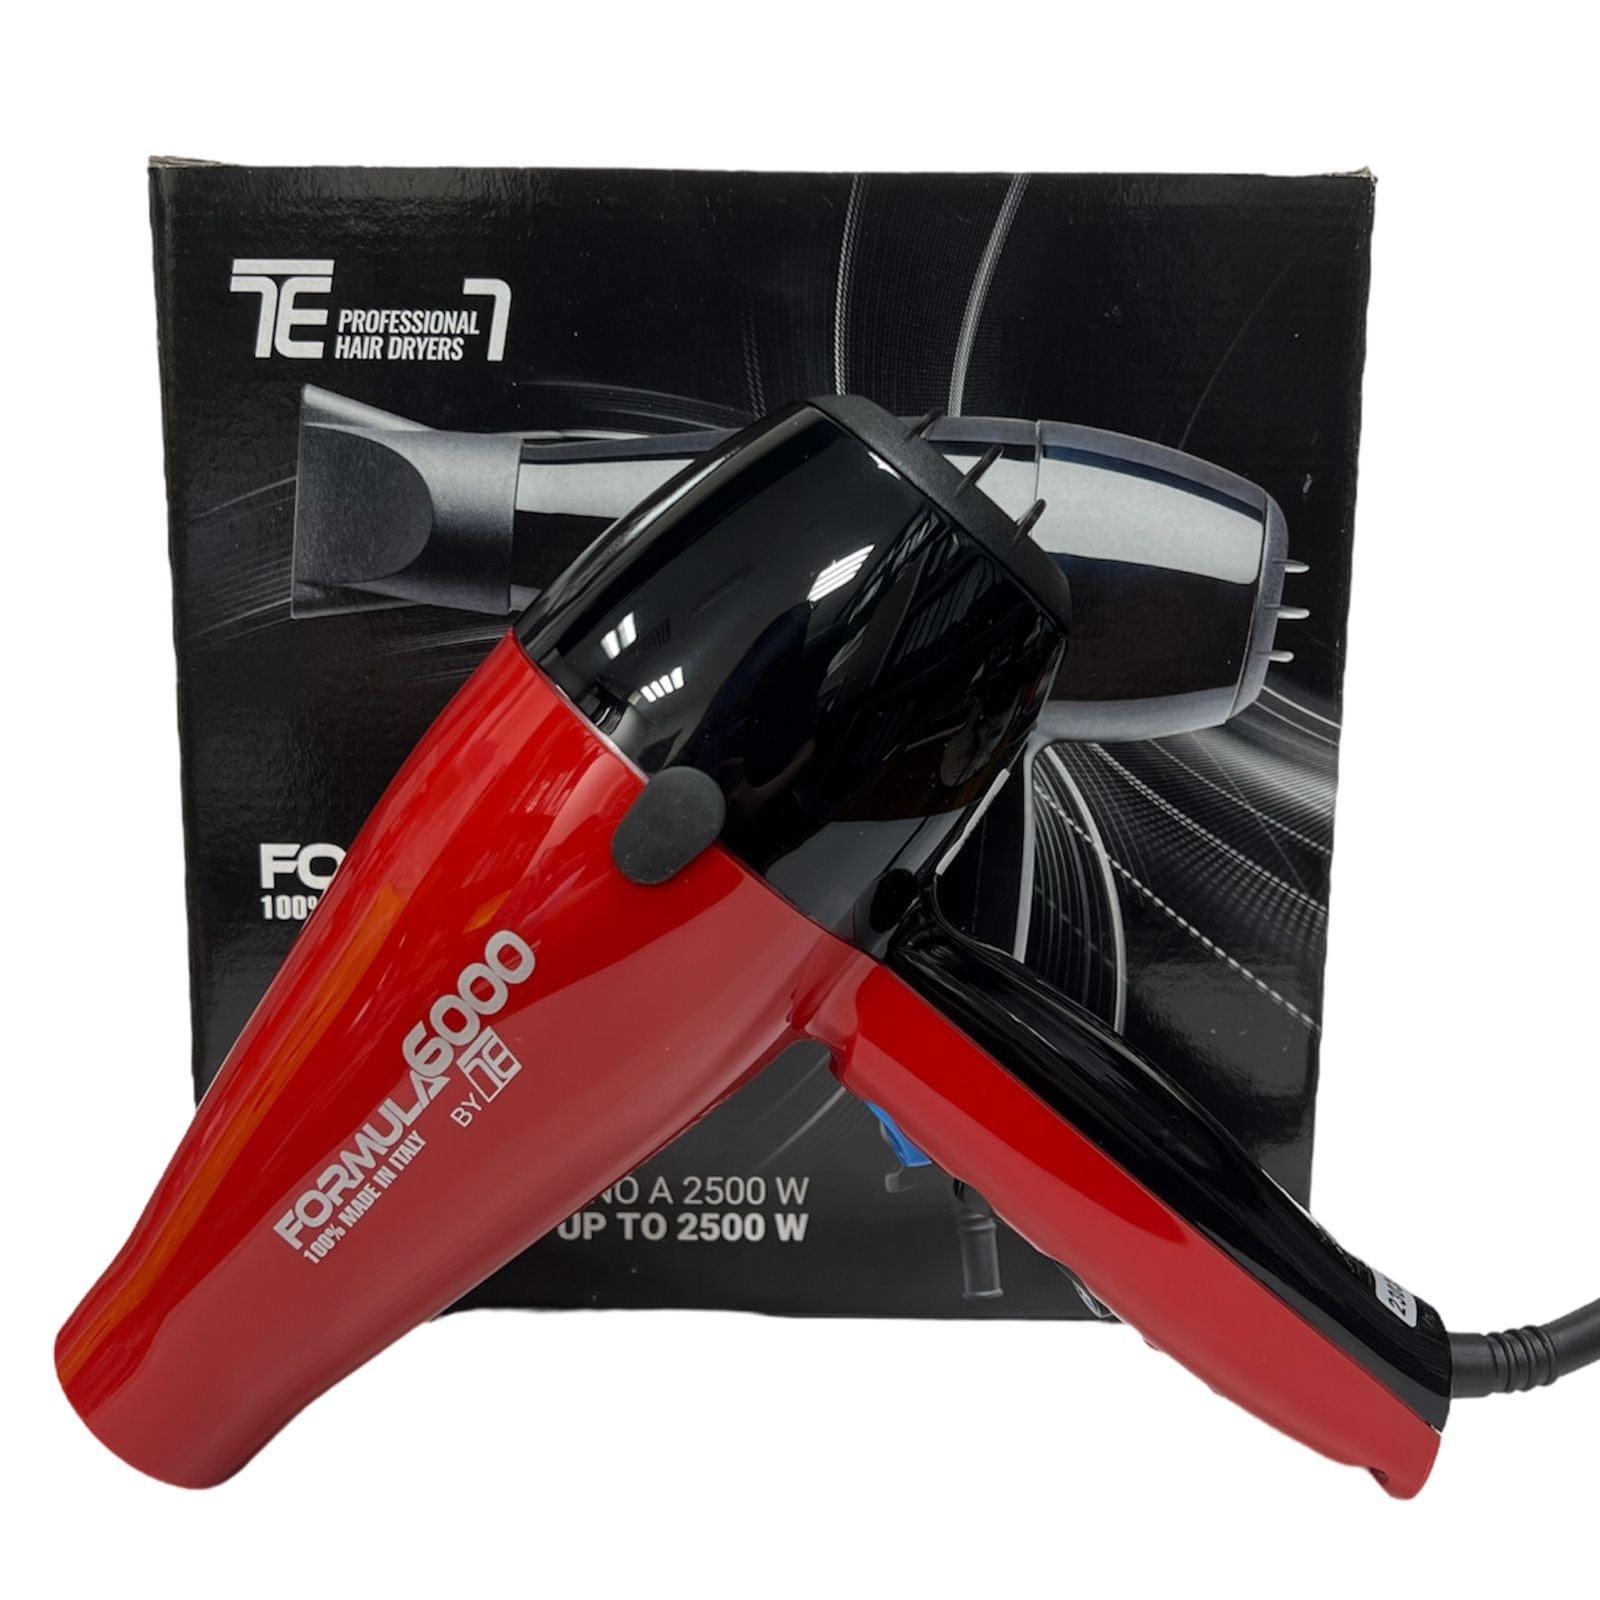 Tecno Elettra Formula 6000 Professional Hair Dryer Red & Black 2500W